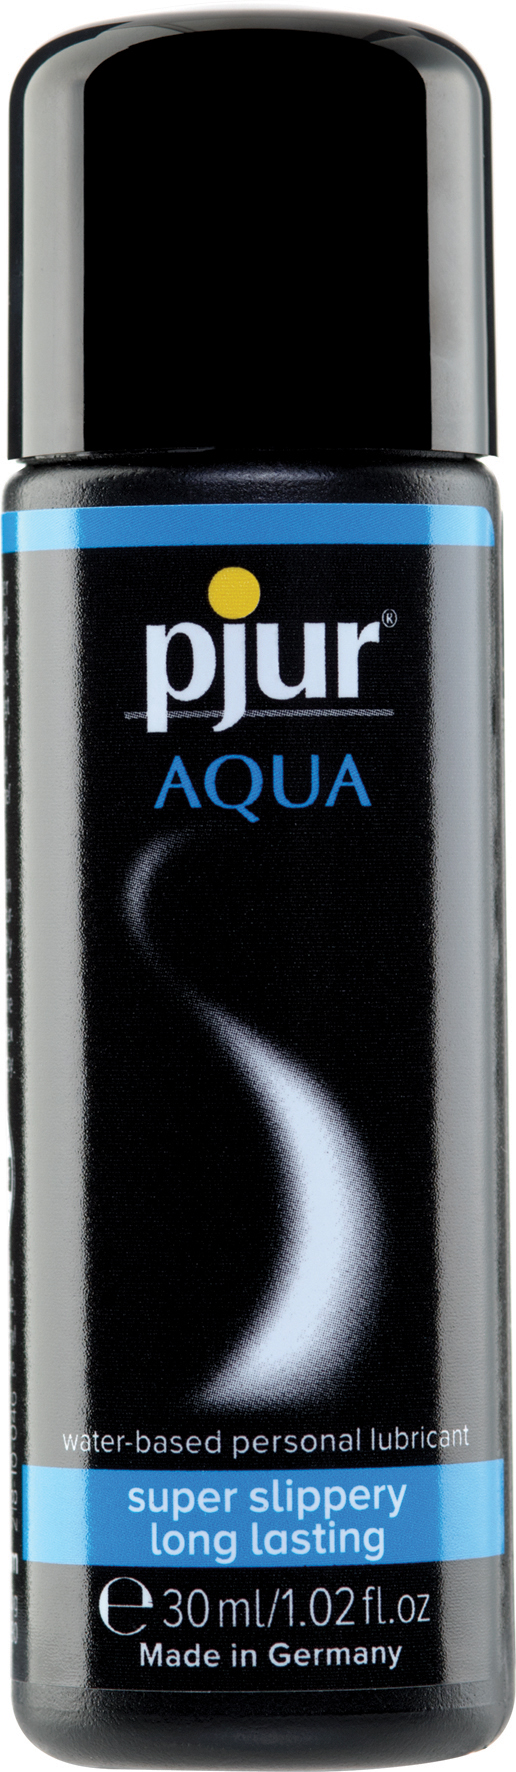 pjur Aqua 30ml